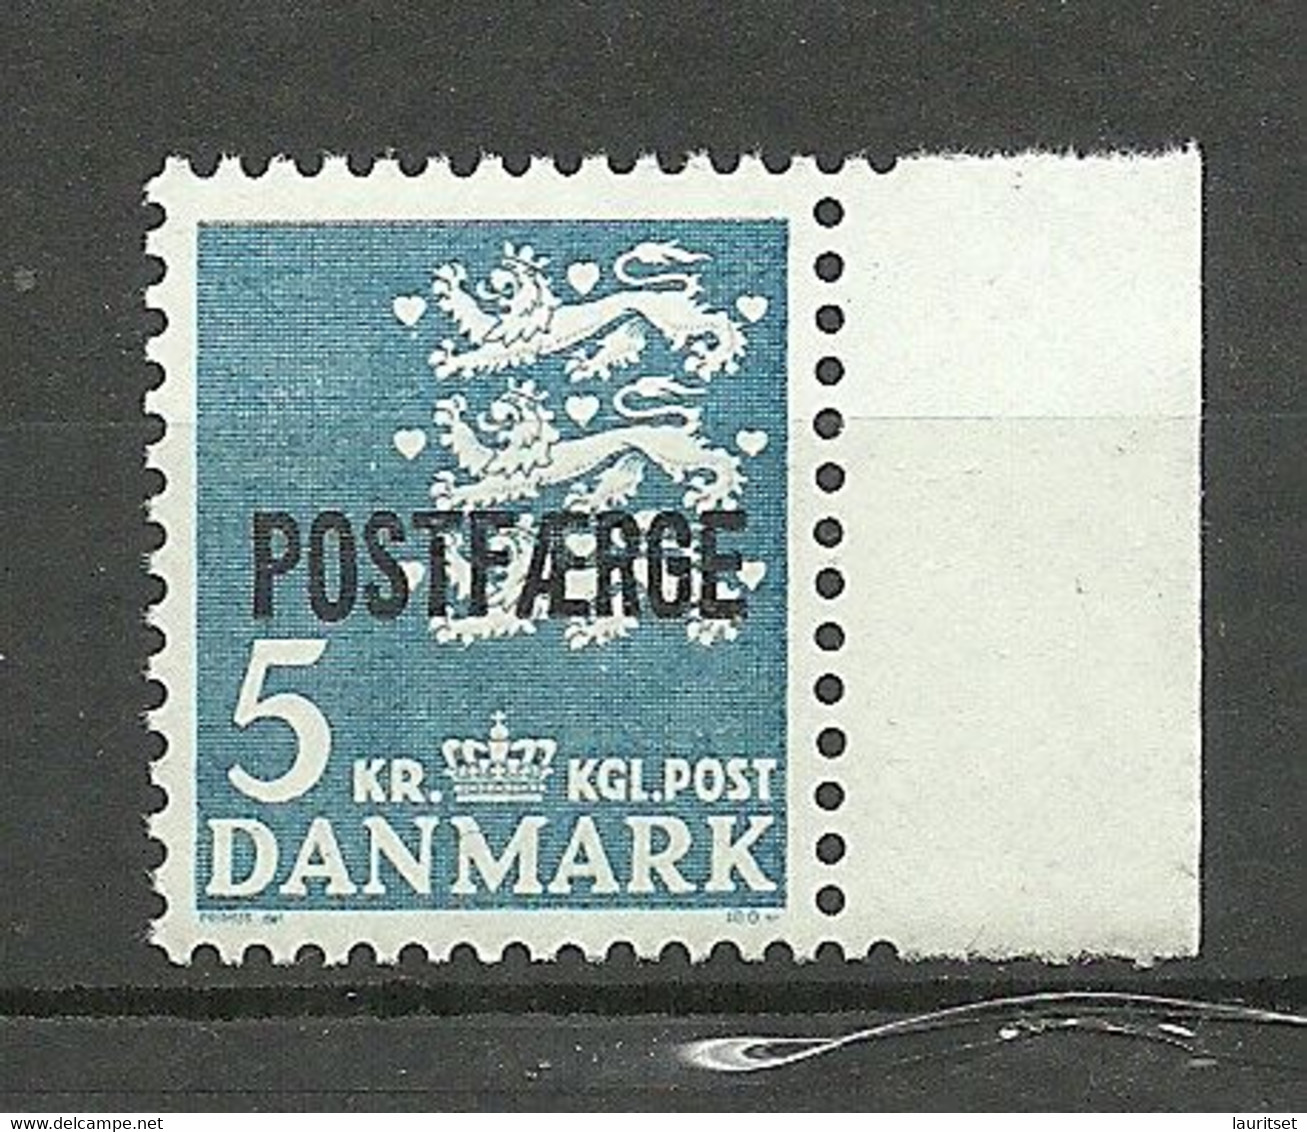 DENMARK Dänemark 1972 Michel 44 MNH Postfähre Paketmarke - Pacchi Postali